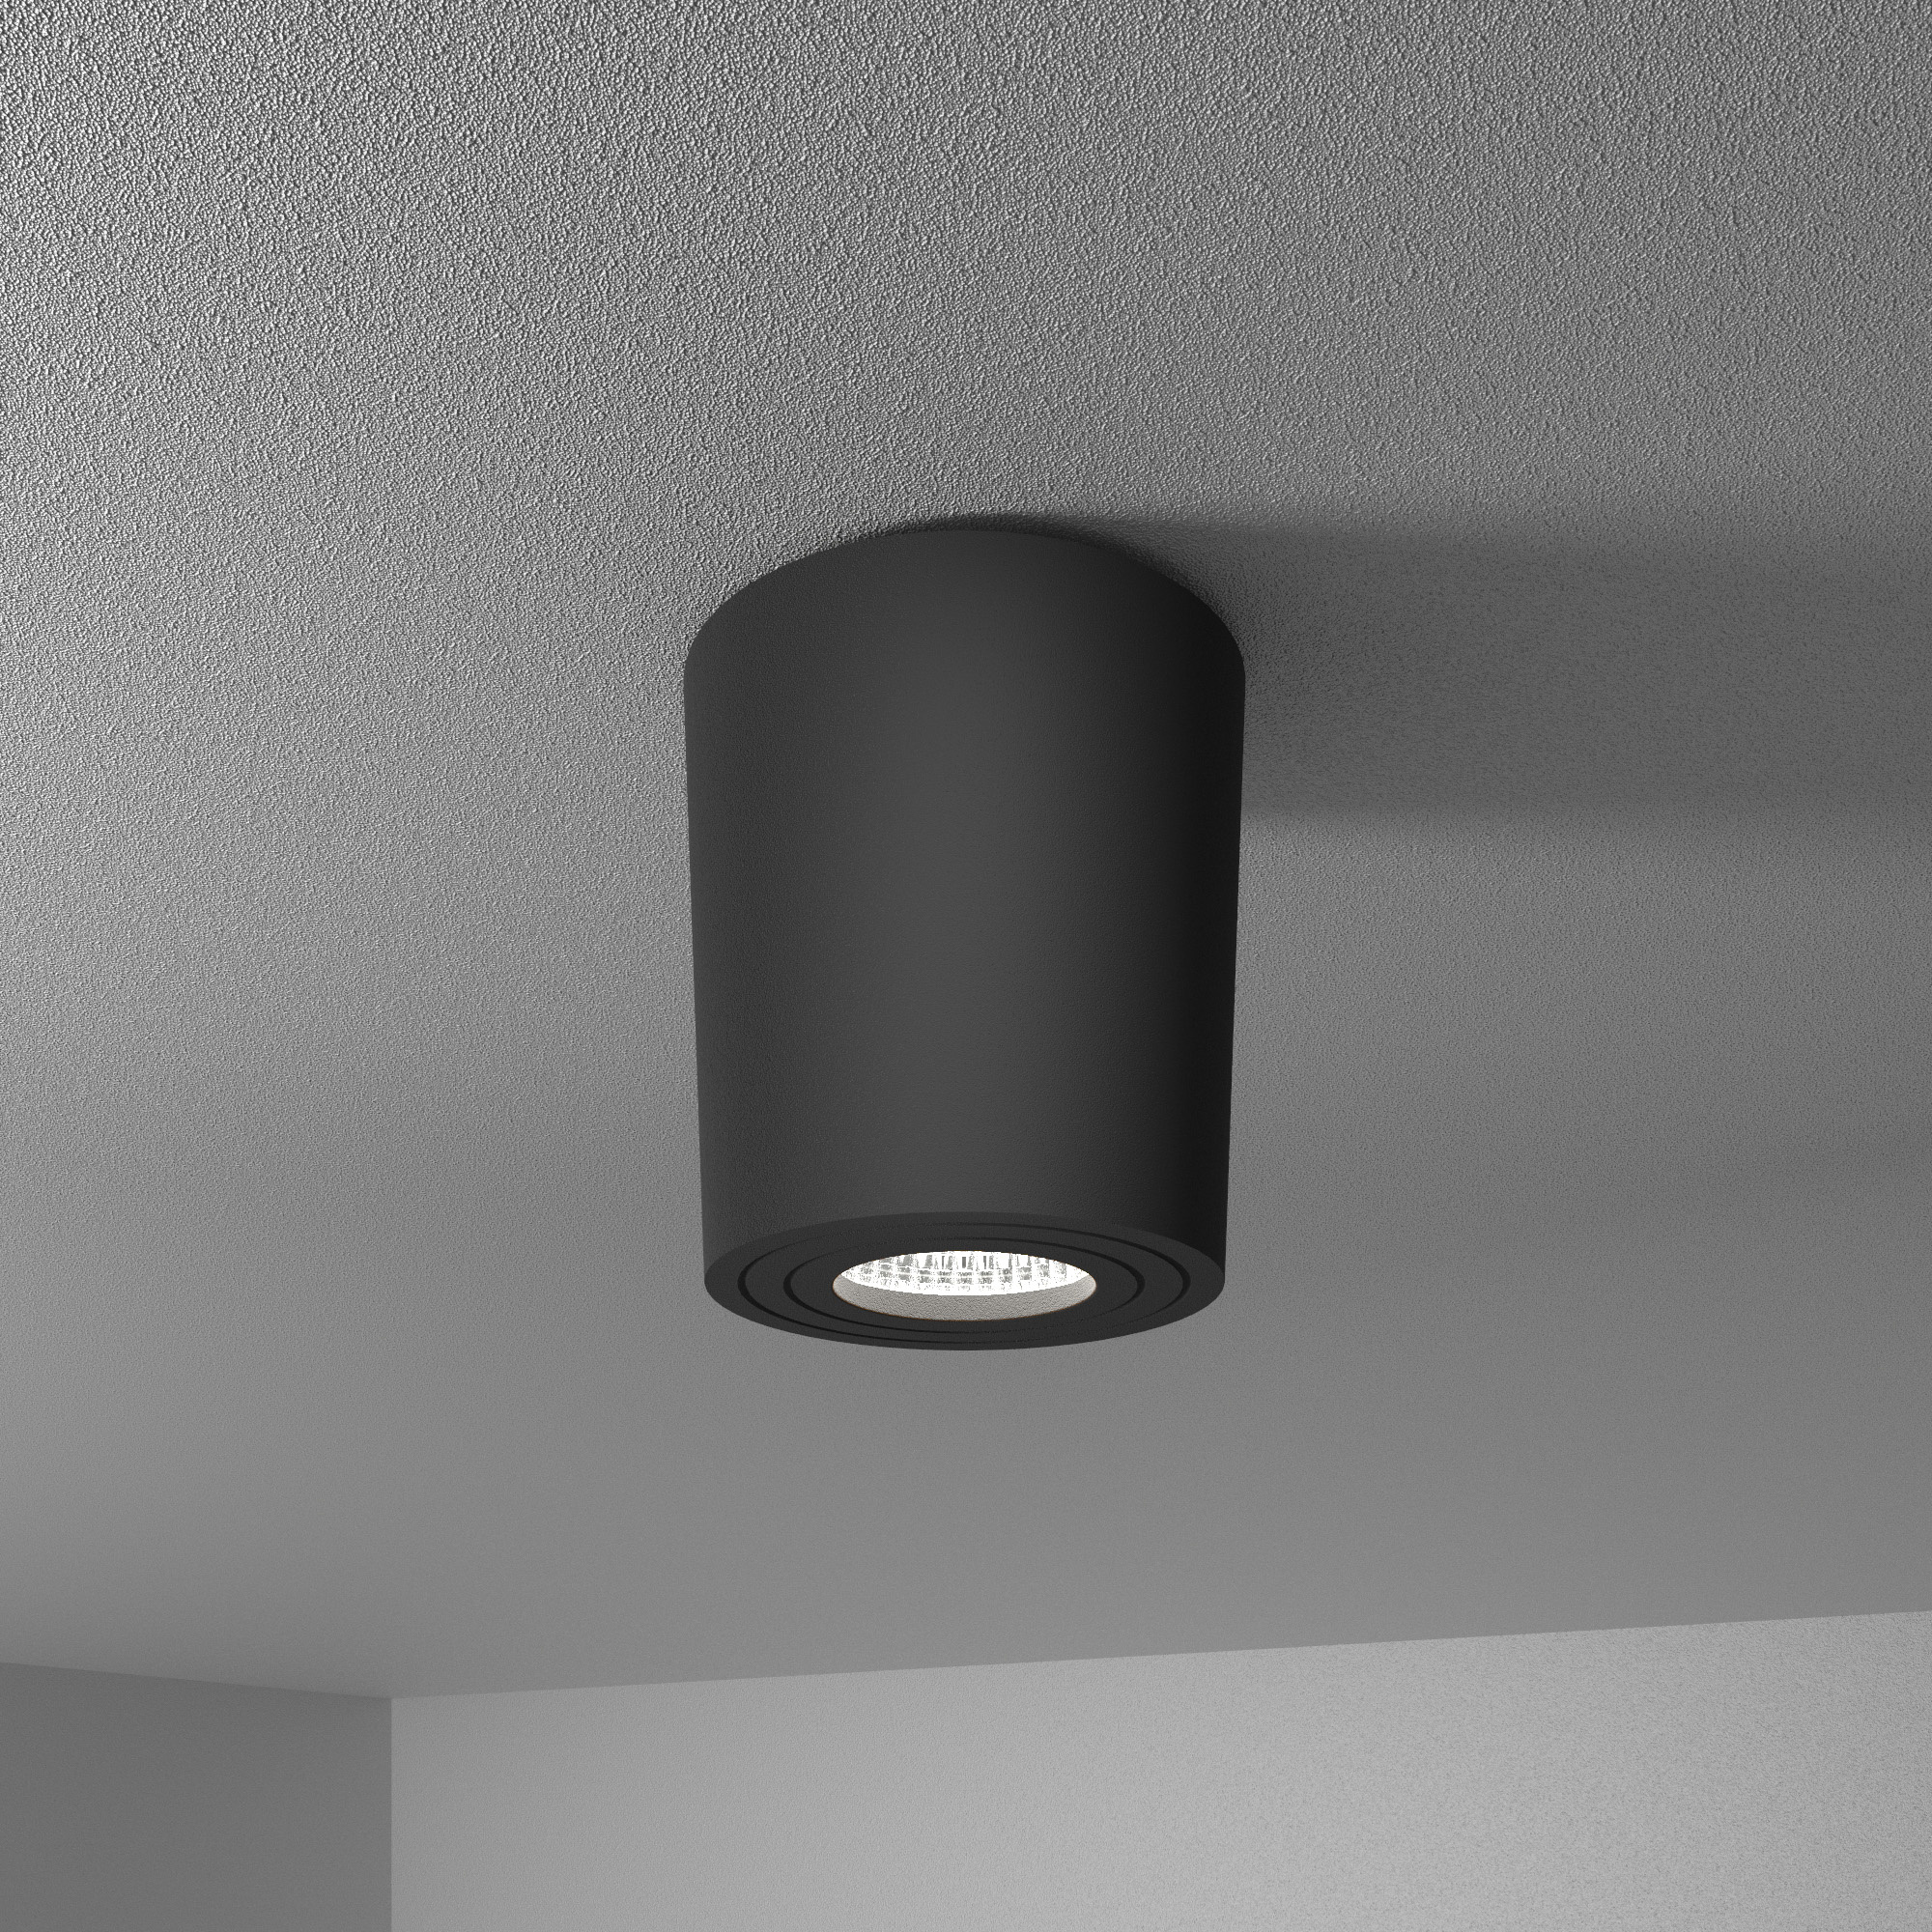 HOFTRONIC™ Paxton LED Opbouwspot plafond - Rond - Zwart - Aluminium met poedercoating - IP65 waterdicht voor binnen en buiten - incl. GU10 spot Daglicht wit 6000K - 3 jaar garantie